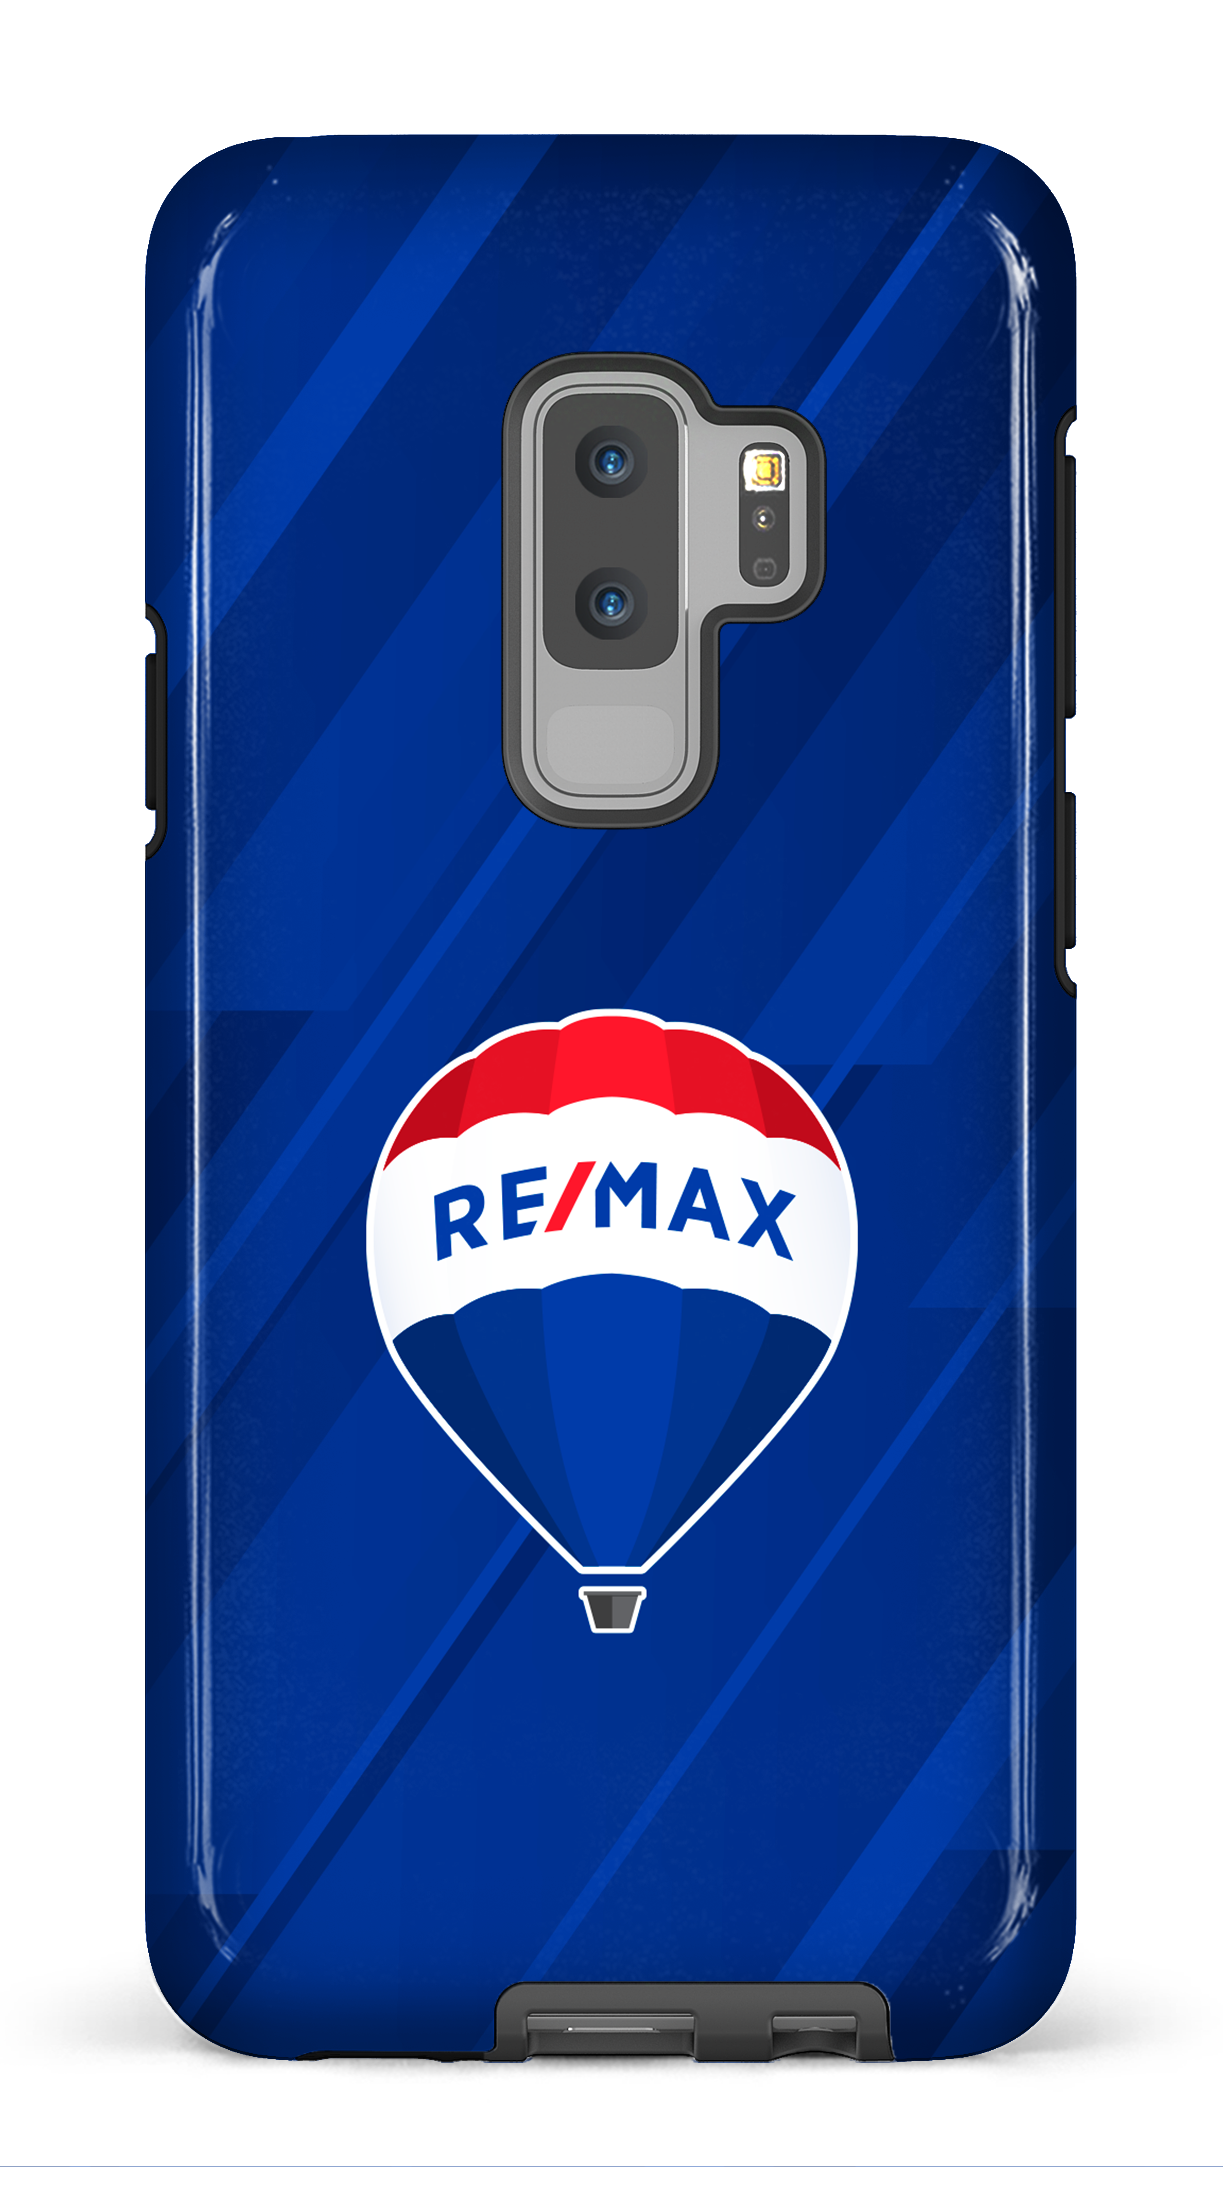 Remax Bleu - Galaxy S9 Plus